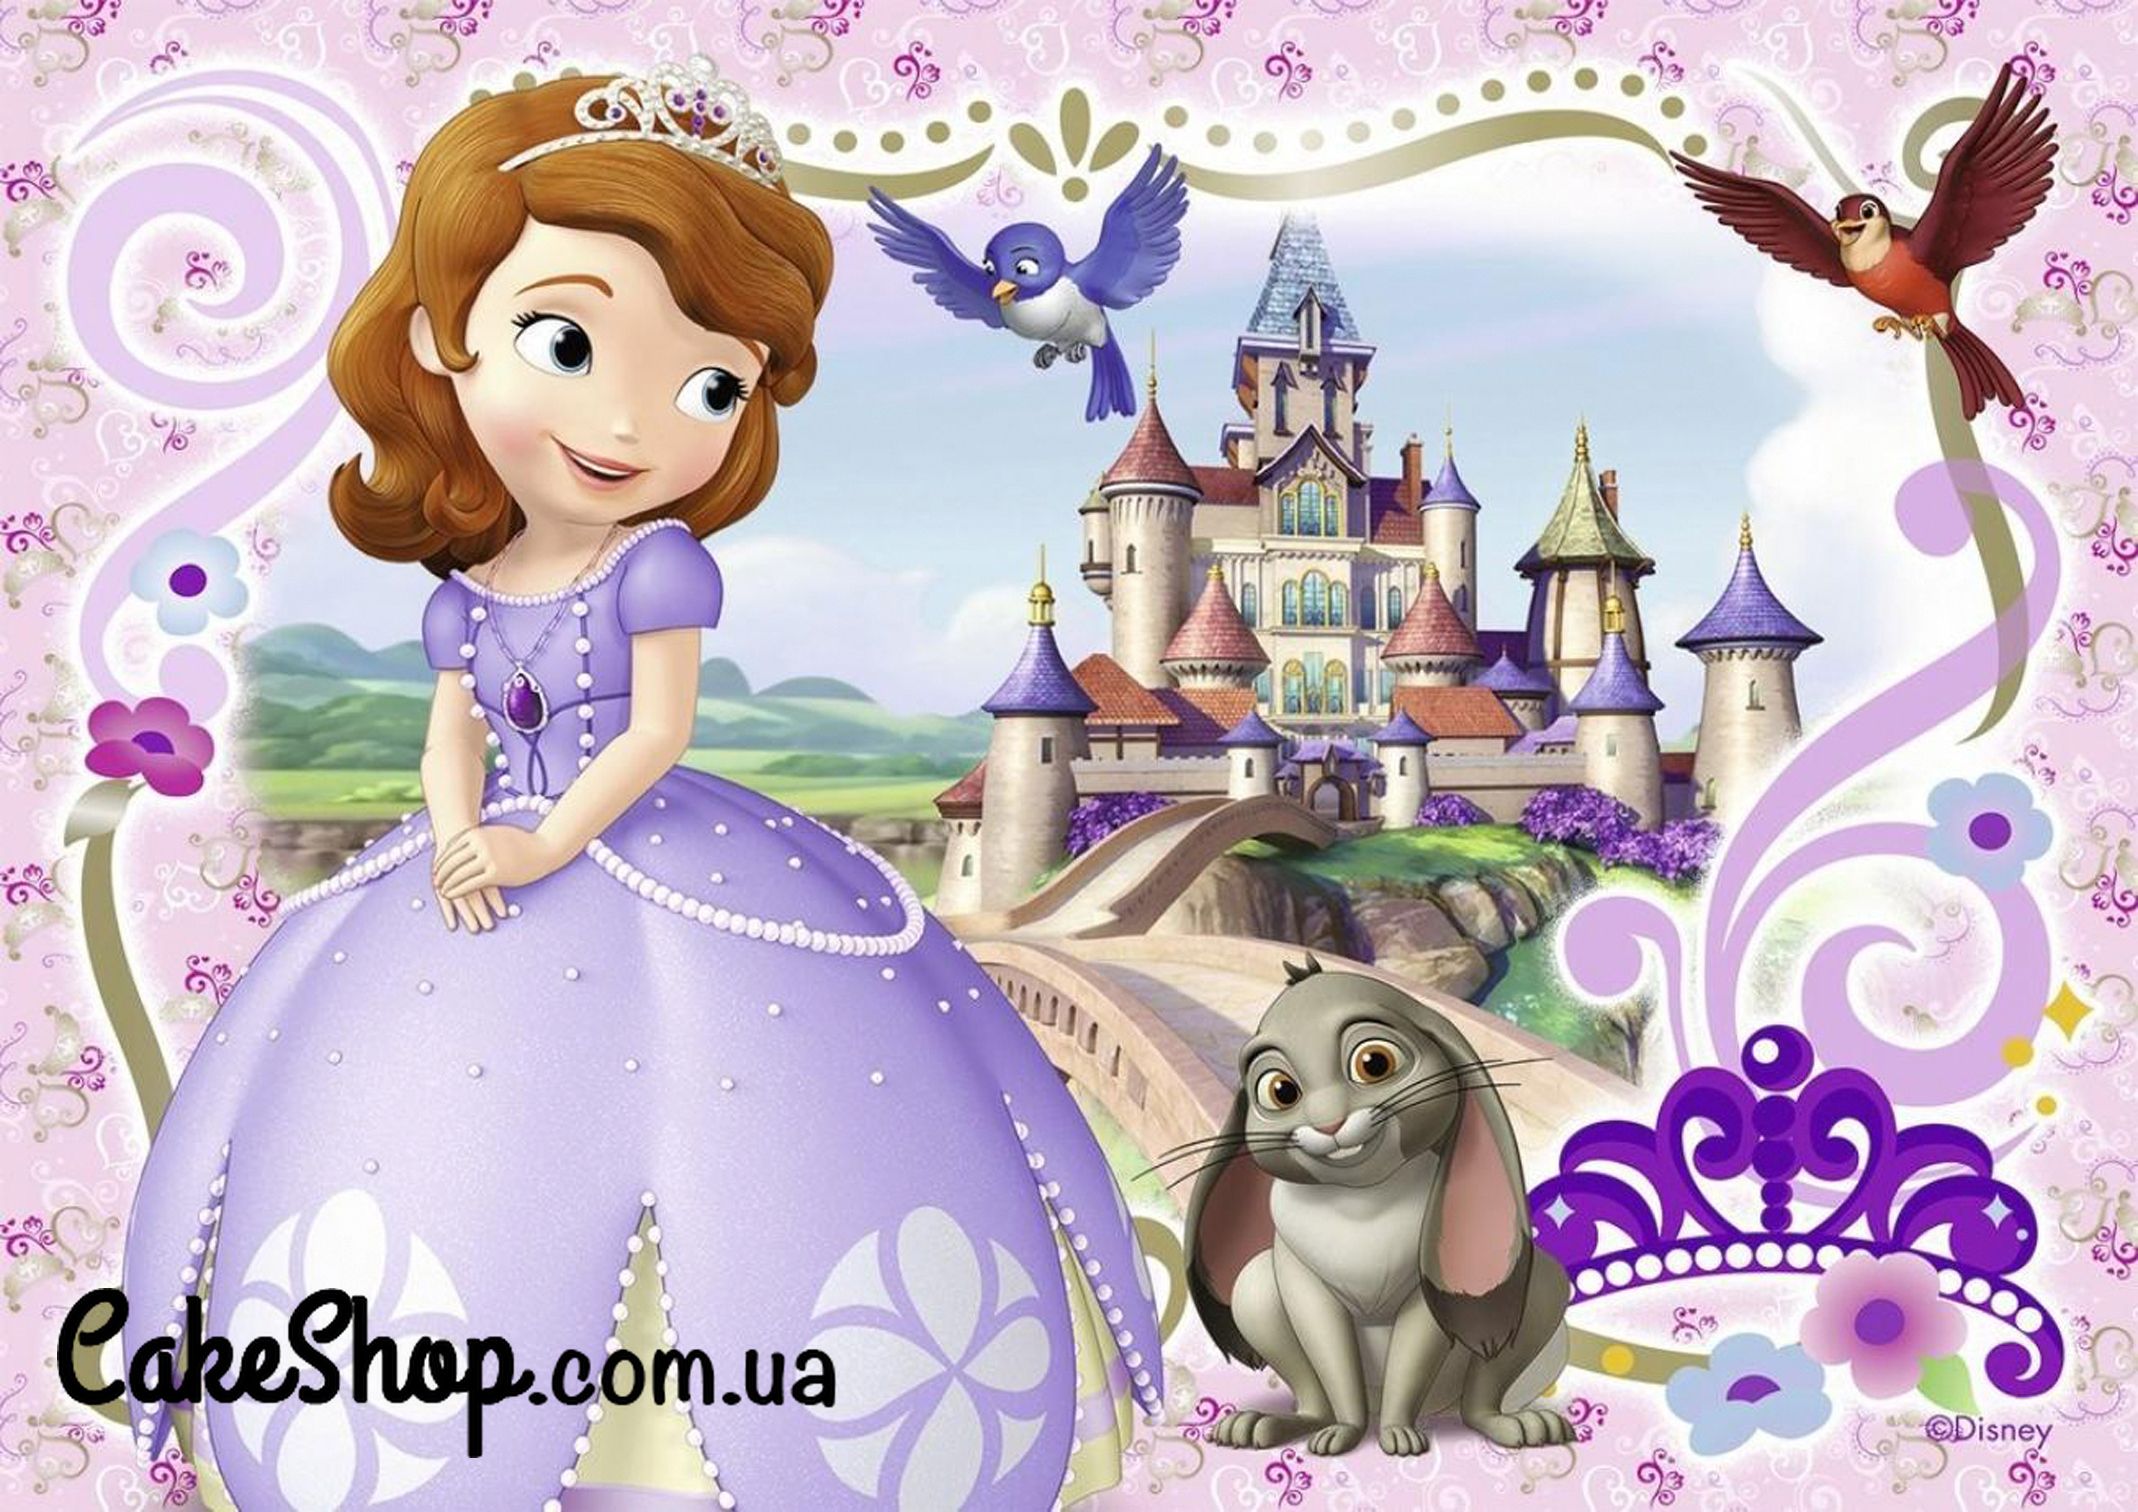 ⋗ Сахарная картинка Принцесса София 6 купить в Украине ➛ CakeShop.com.ua, фото